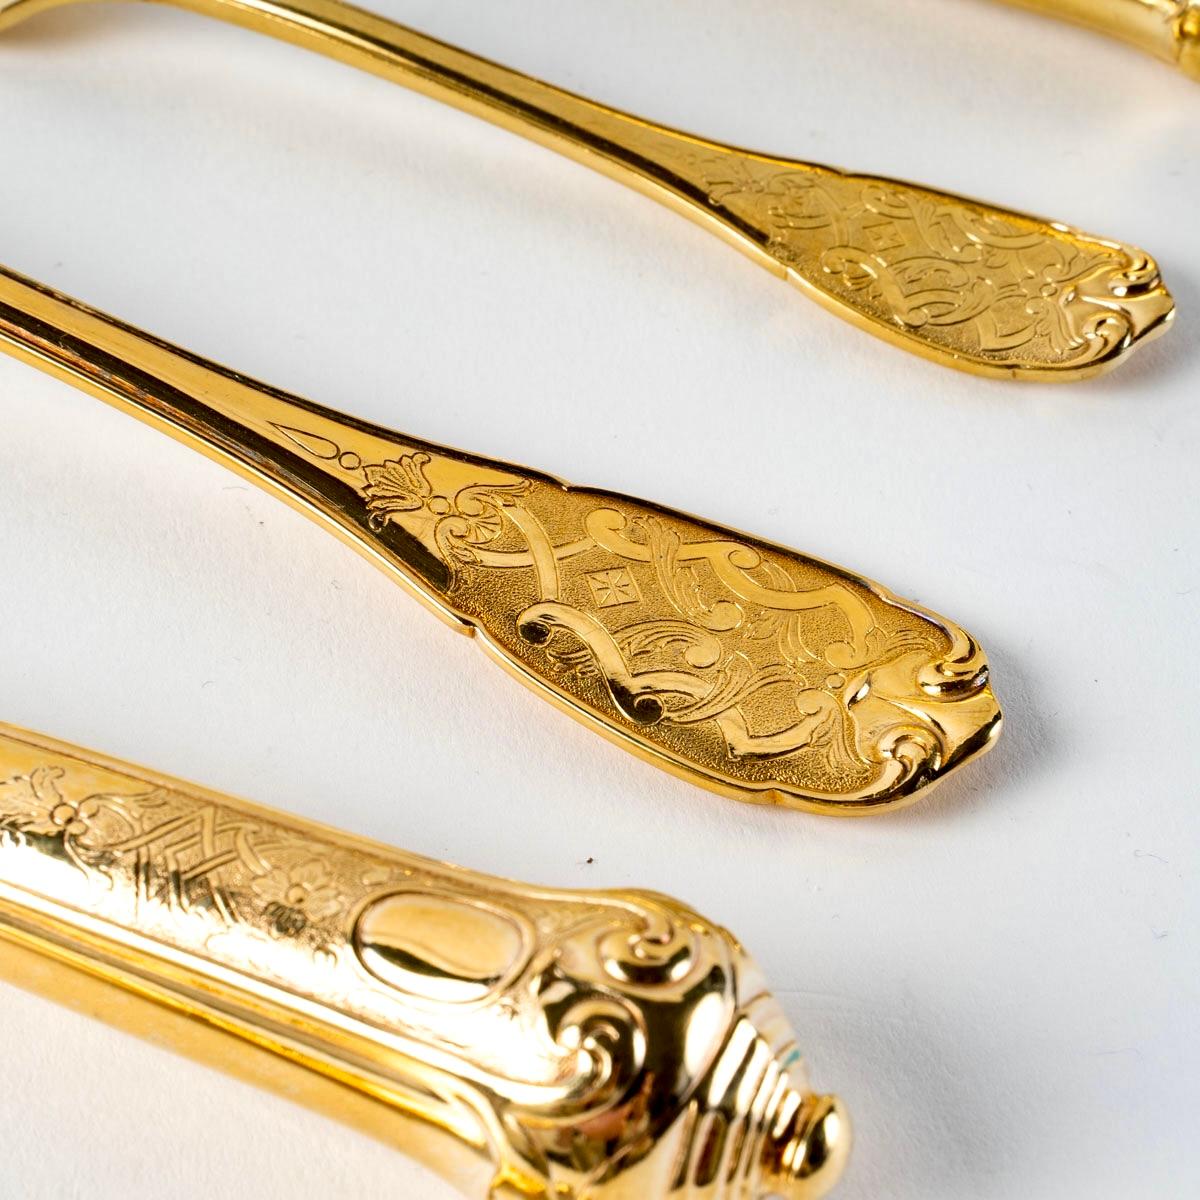 Puiforcat, Elysée Vermeil Gold Sterling Silver Flatware Cutlery Set, 70 Pieces 3